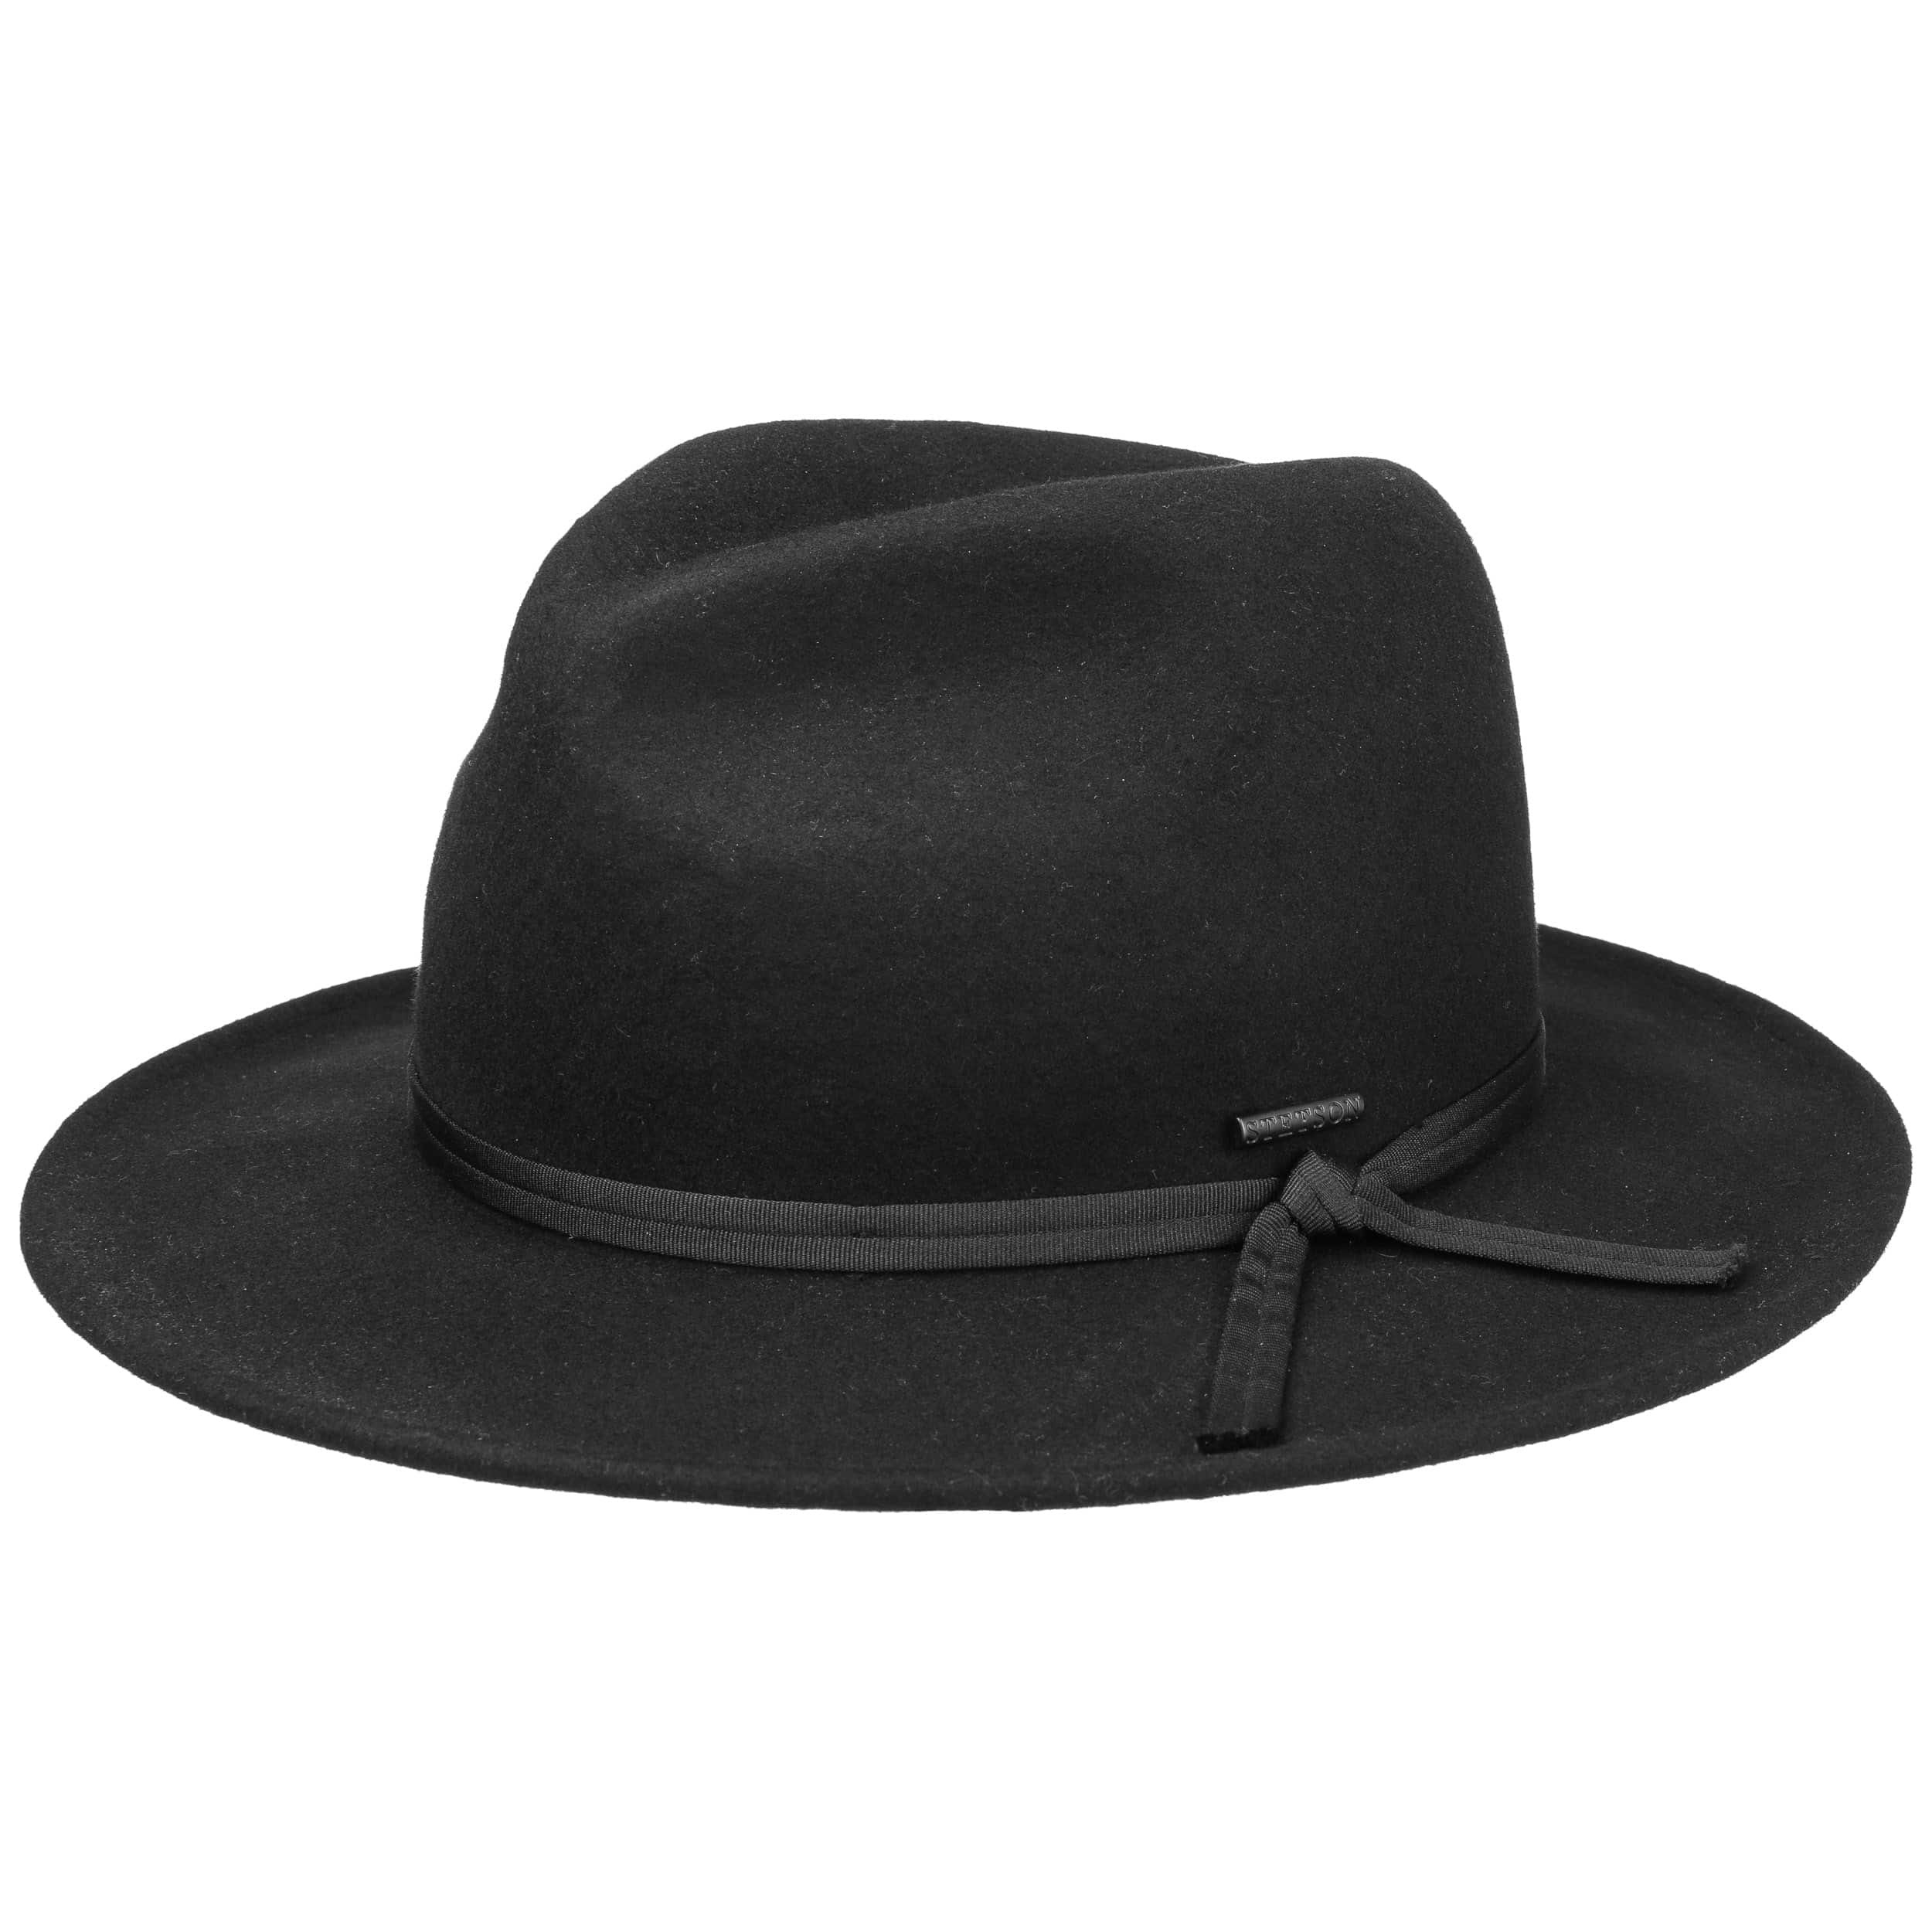 Carlson Fedora Wool Felt Hat by Stetson - 89,00